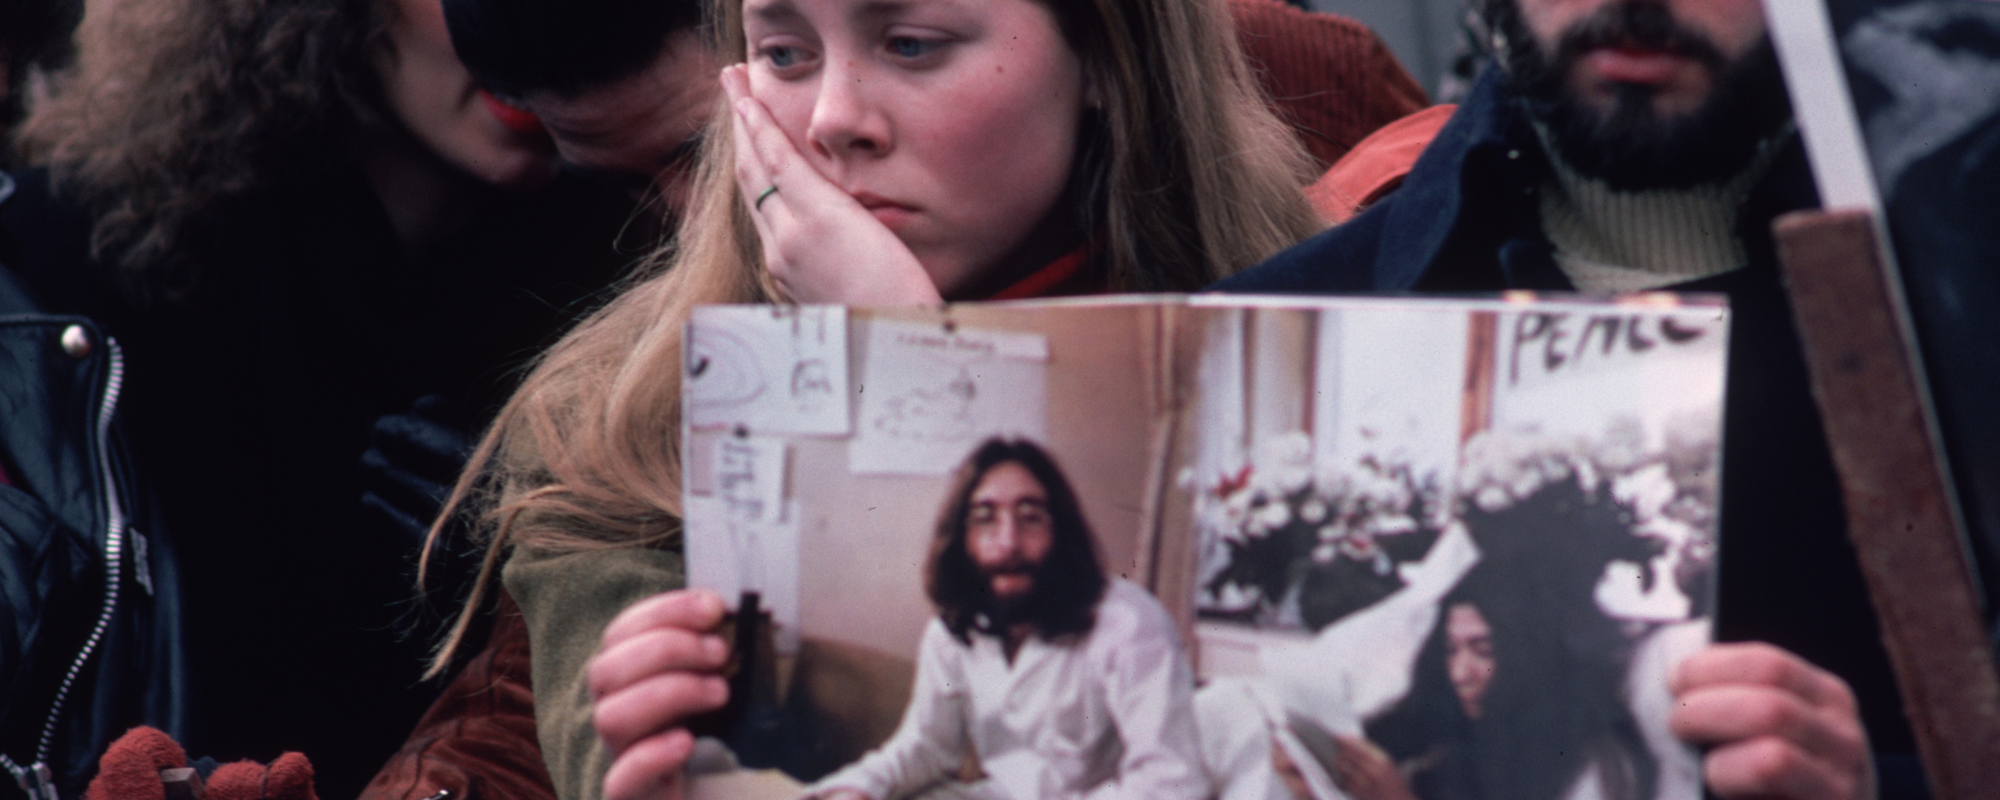 John Lennon’s Murder to be the Focus of New Three-Part Apple TV+ Docuseries